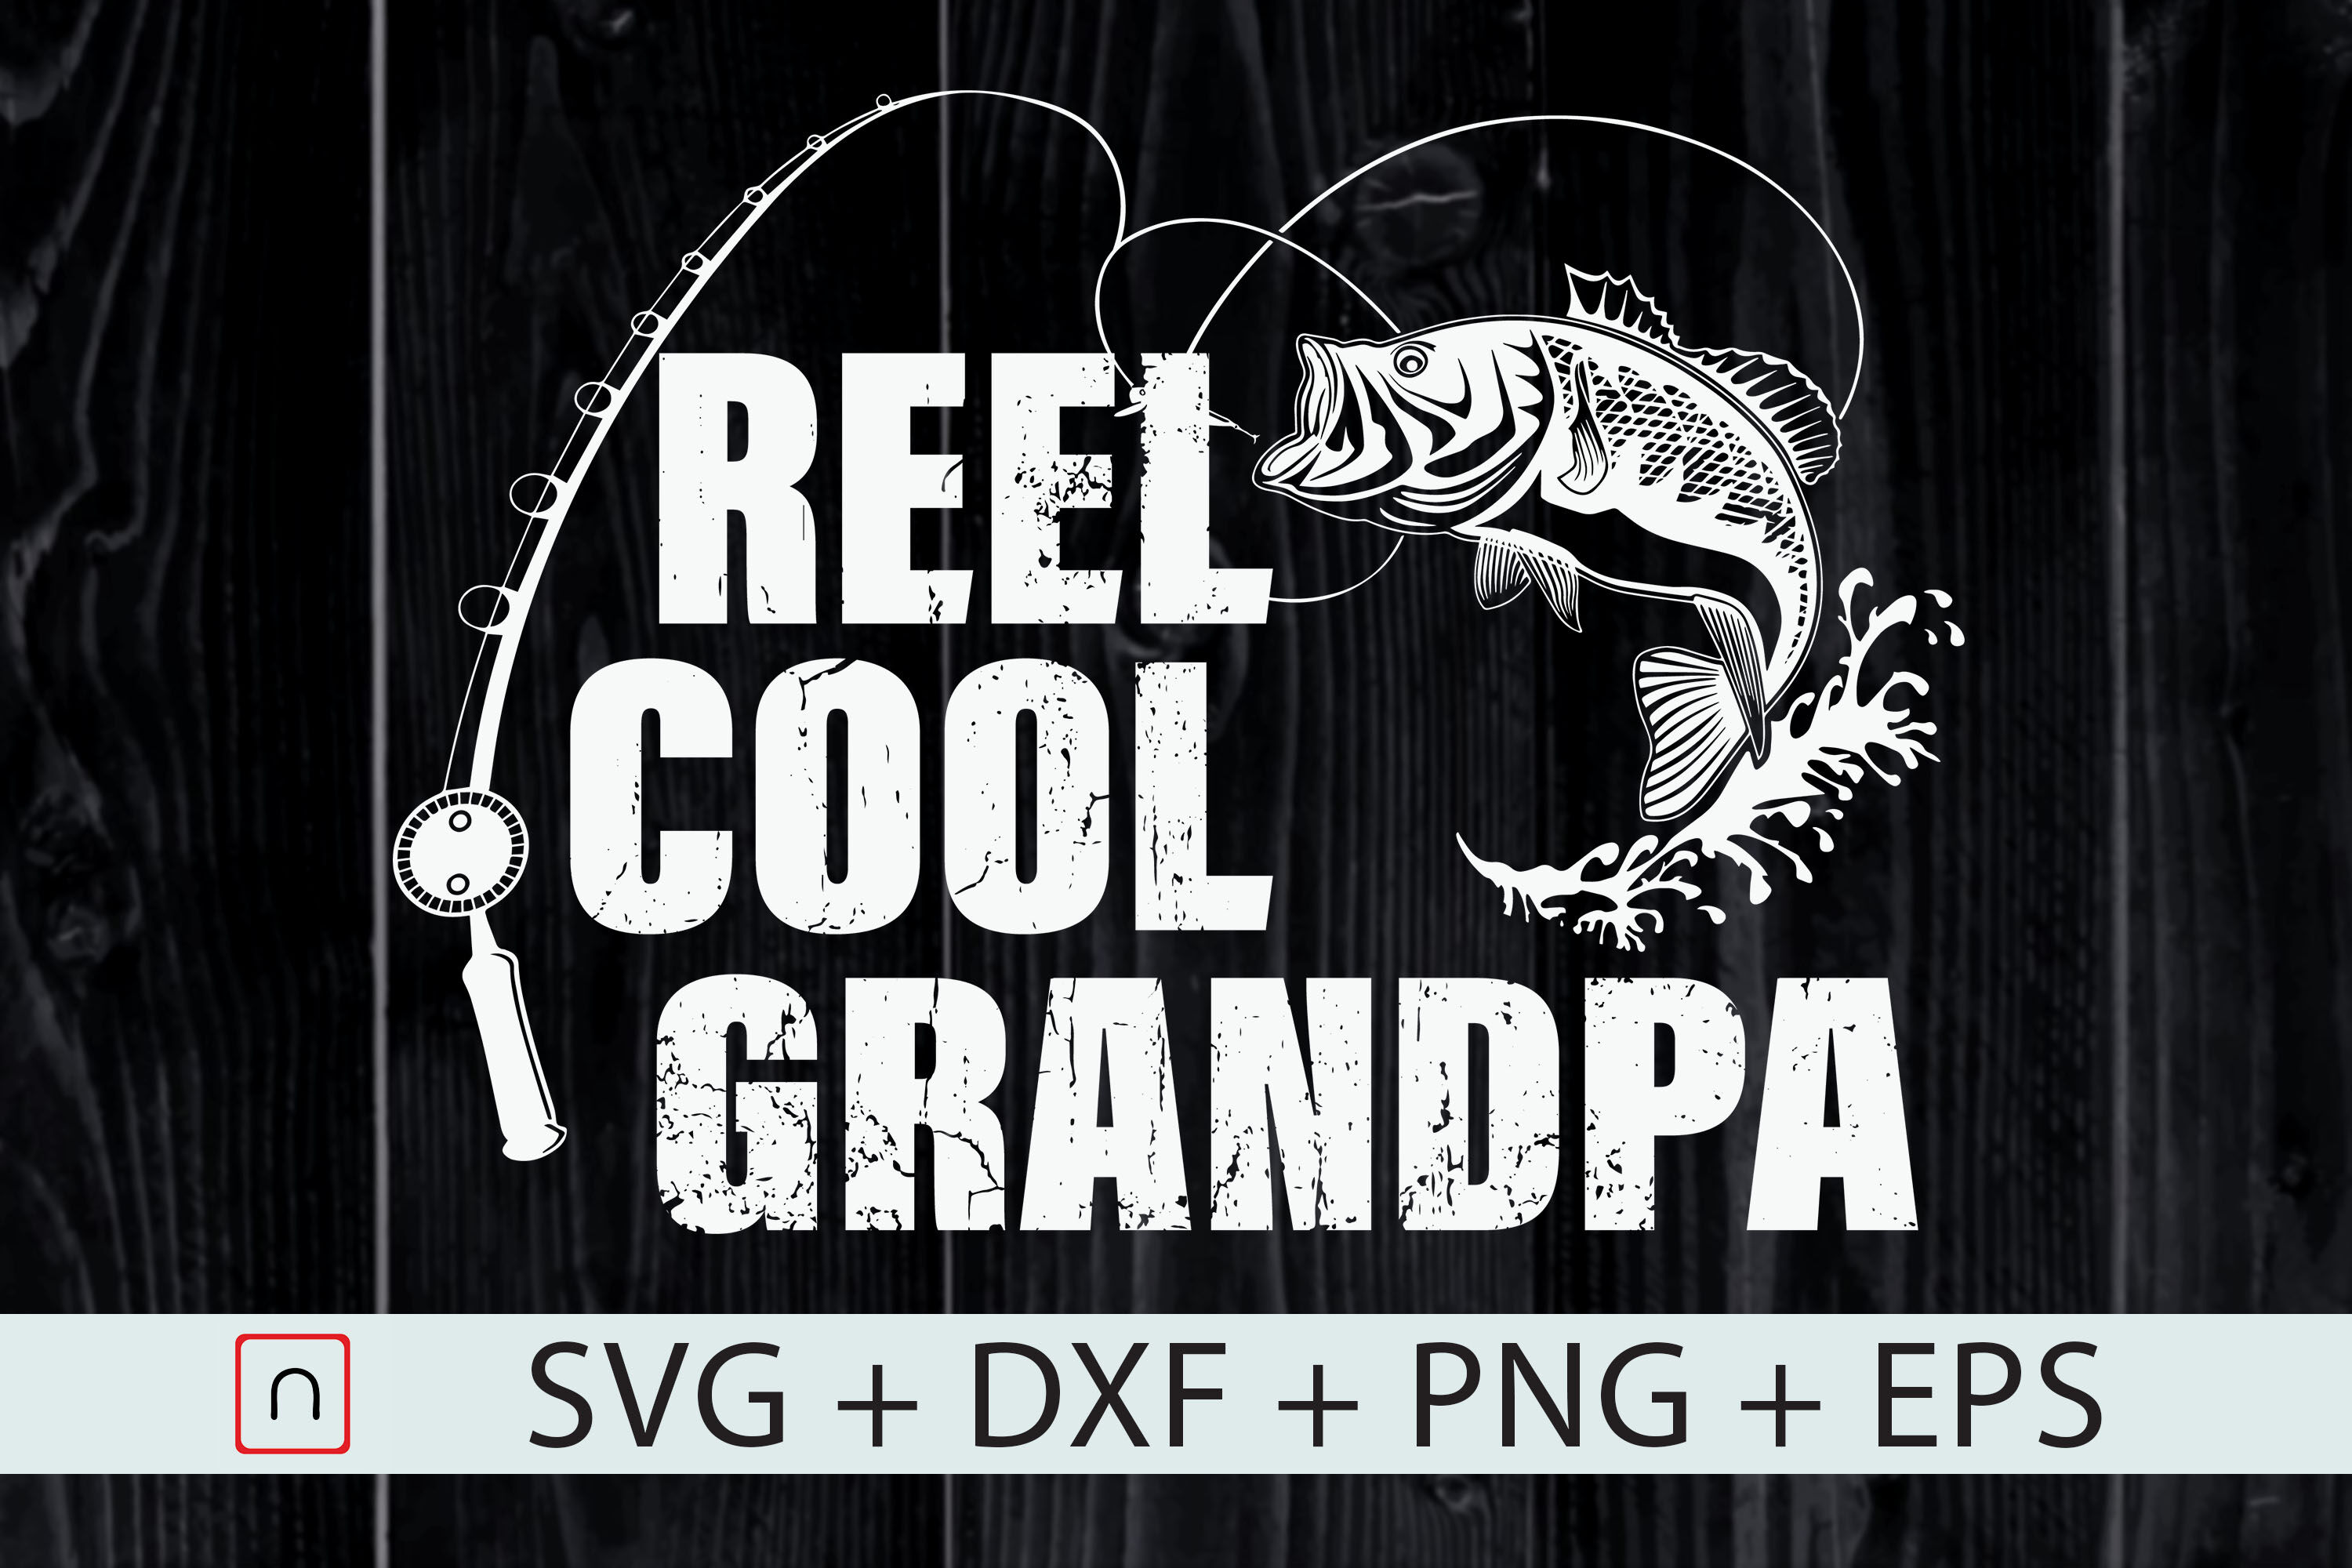 Free Free 323 Dad Fishing Svg Reel Cool Dad Svg Free SVG PNG EPS DXF File